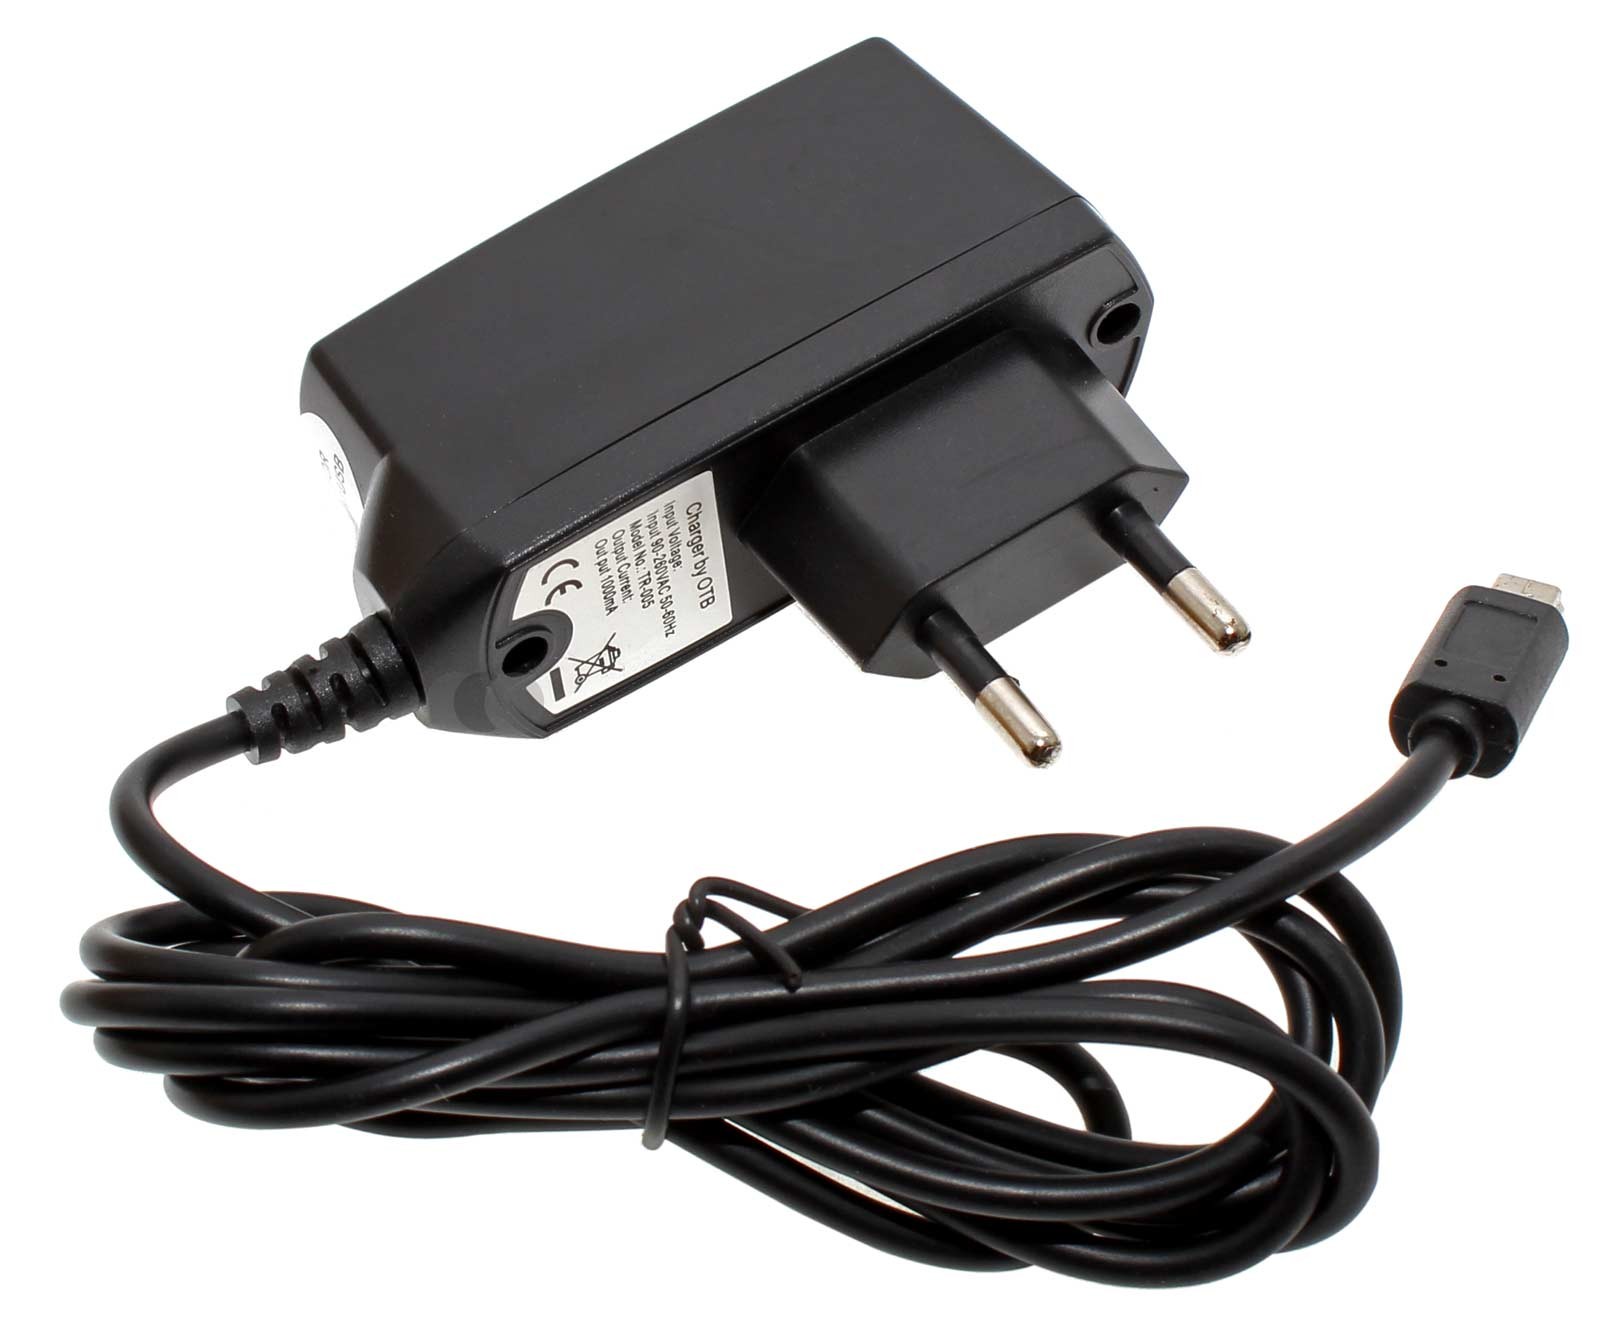 Netzteil, Steckerladegerät, Netzgerät , Netzkabel, Ladegerät für die Steckdose,mit Stecker mit Mini USB Anschluss und 1 Ampere Ausgangsleistung bei 5 Volt